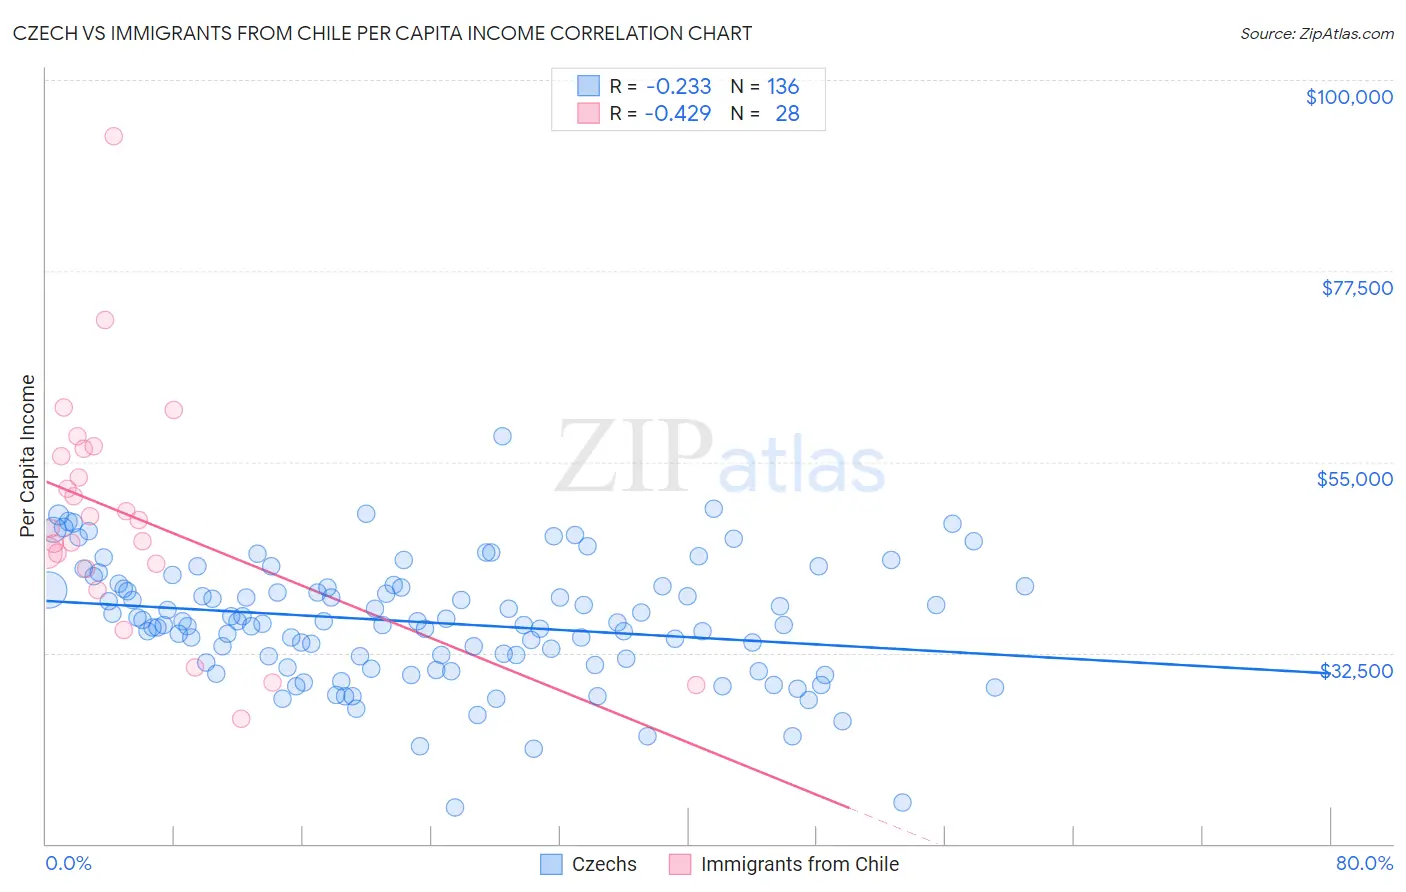 Czech vs Immigrants from Chile Per Capita Income